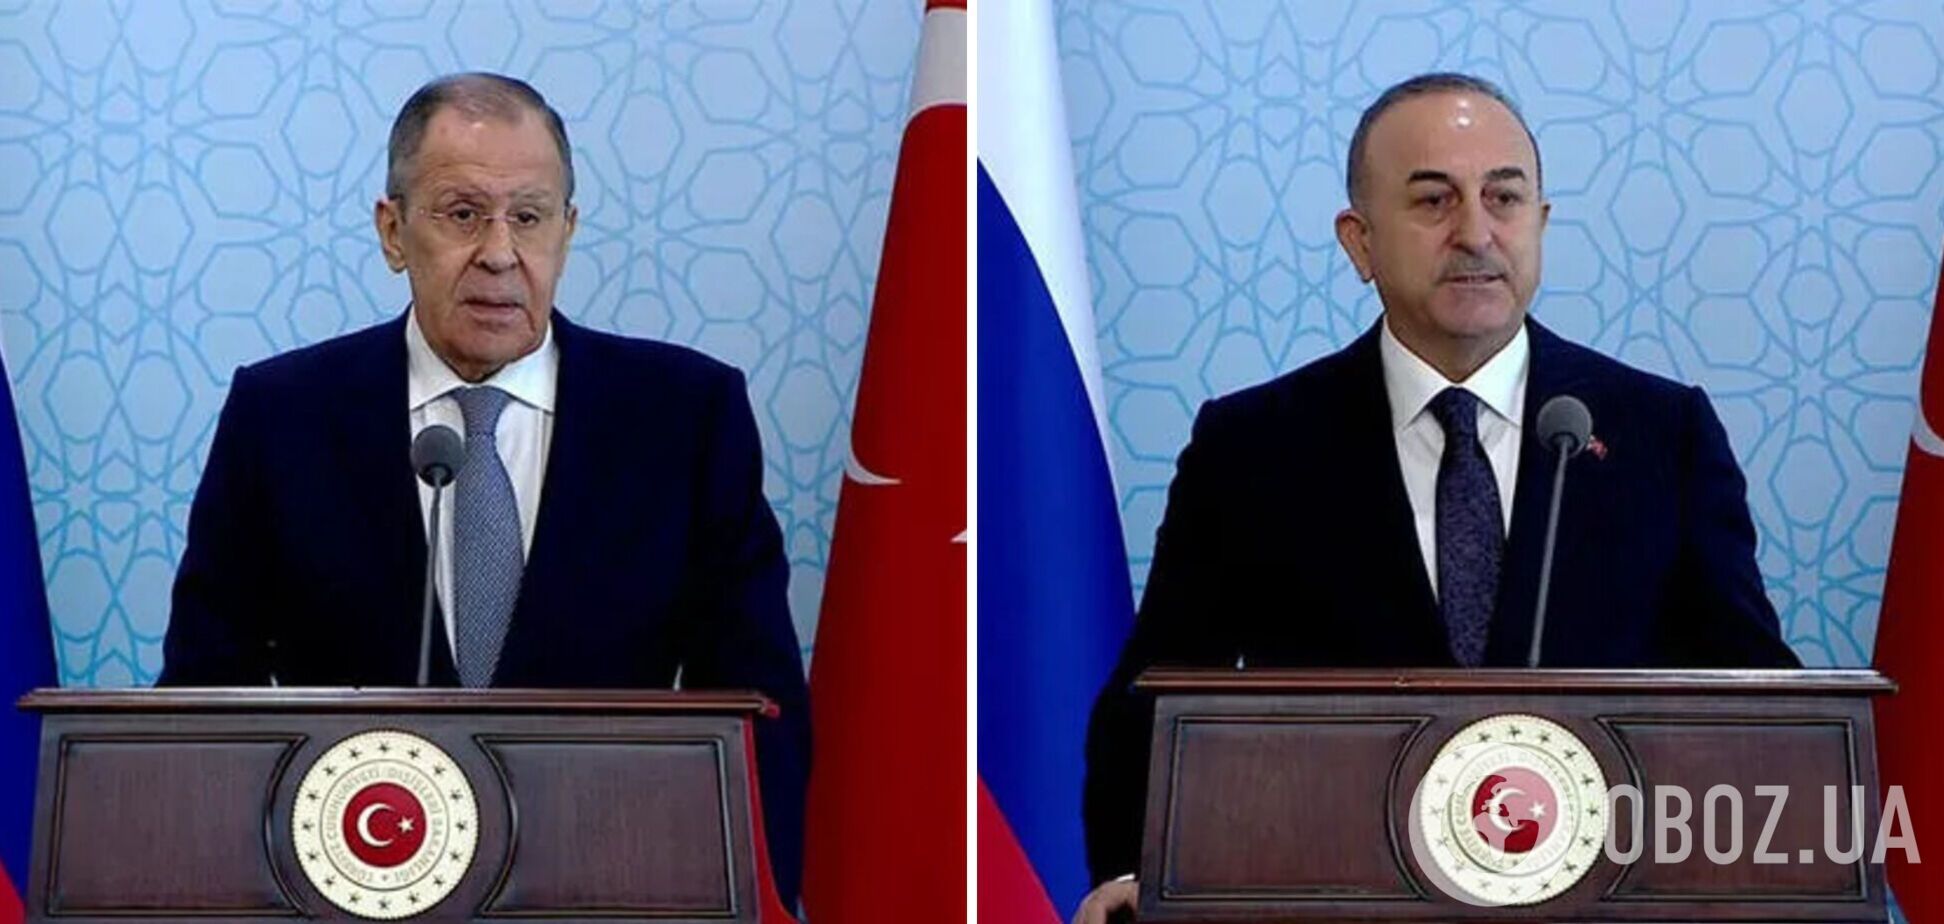 'Должна быть закончена как можно скорее переговорами': глава МИД Турции после переговоров с Лавровым сделал заявление о войне в Украине